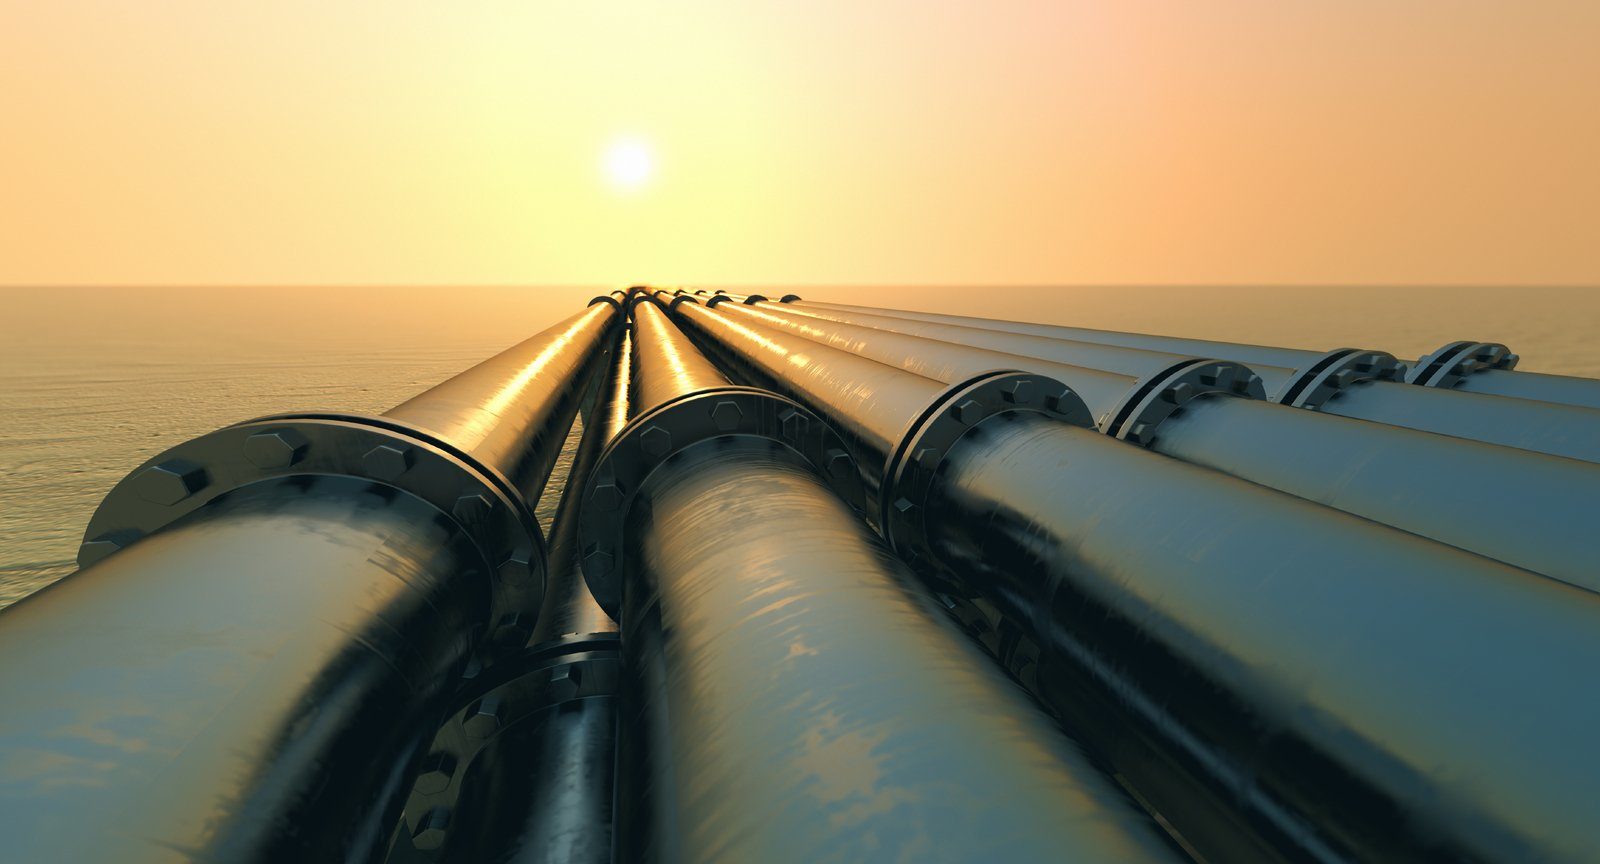 AB, Rusya’nın doğal gaz kesintisini siyasi buluyor